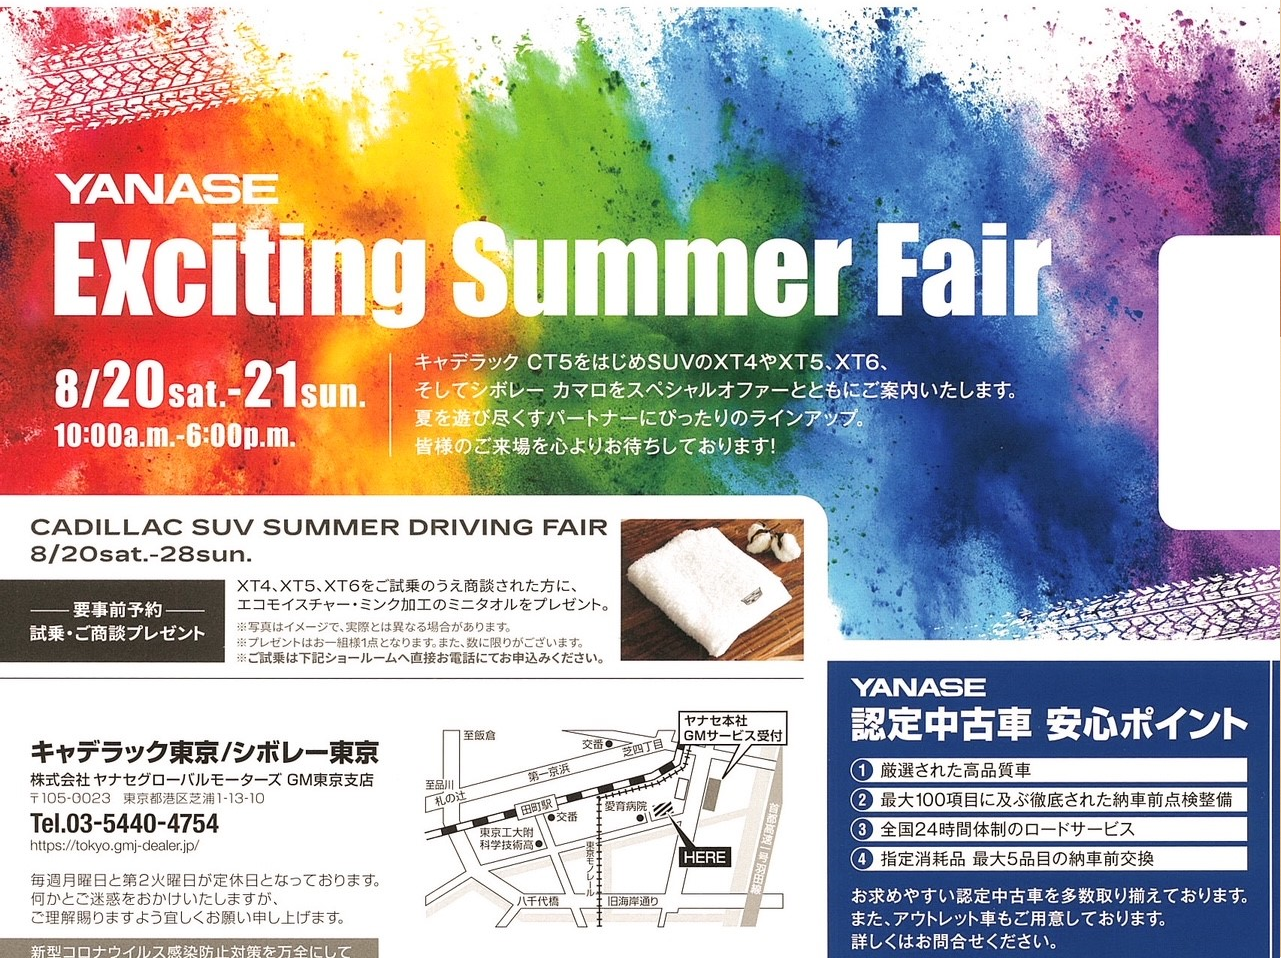 8/20-8/21 Exciting Summer Fair